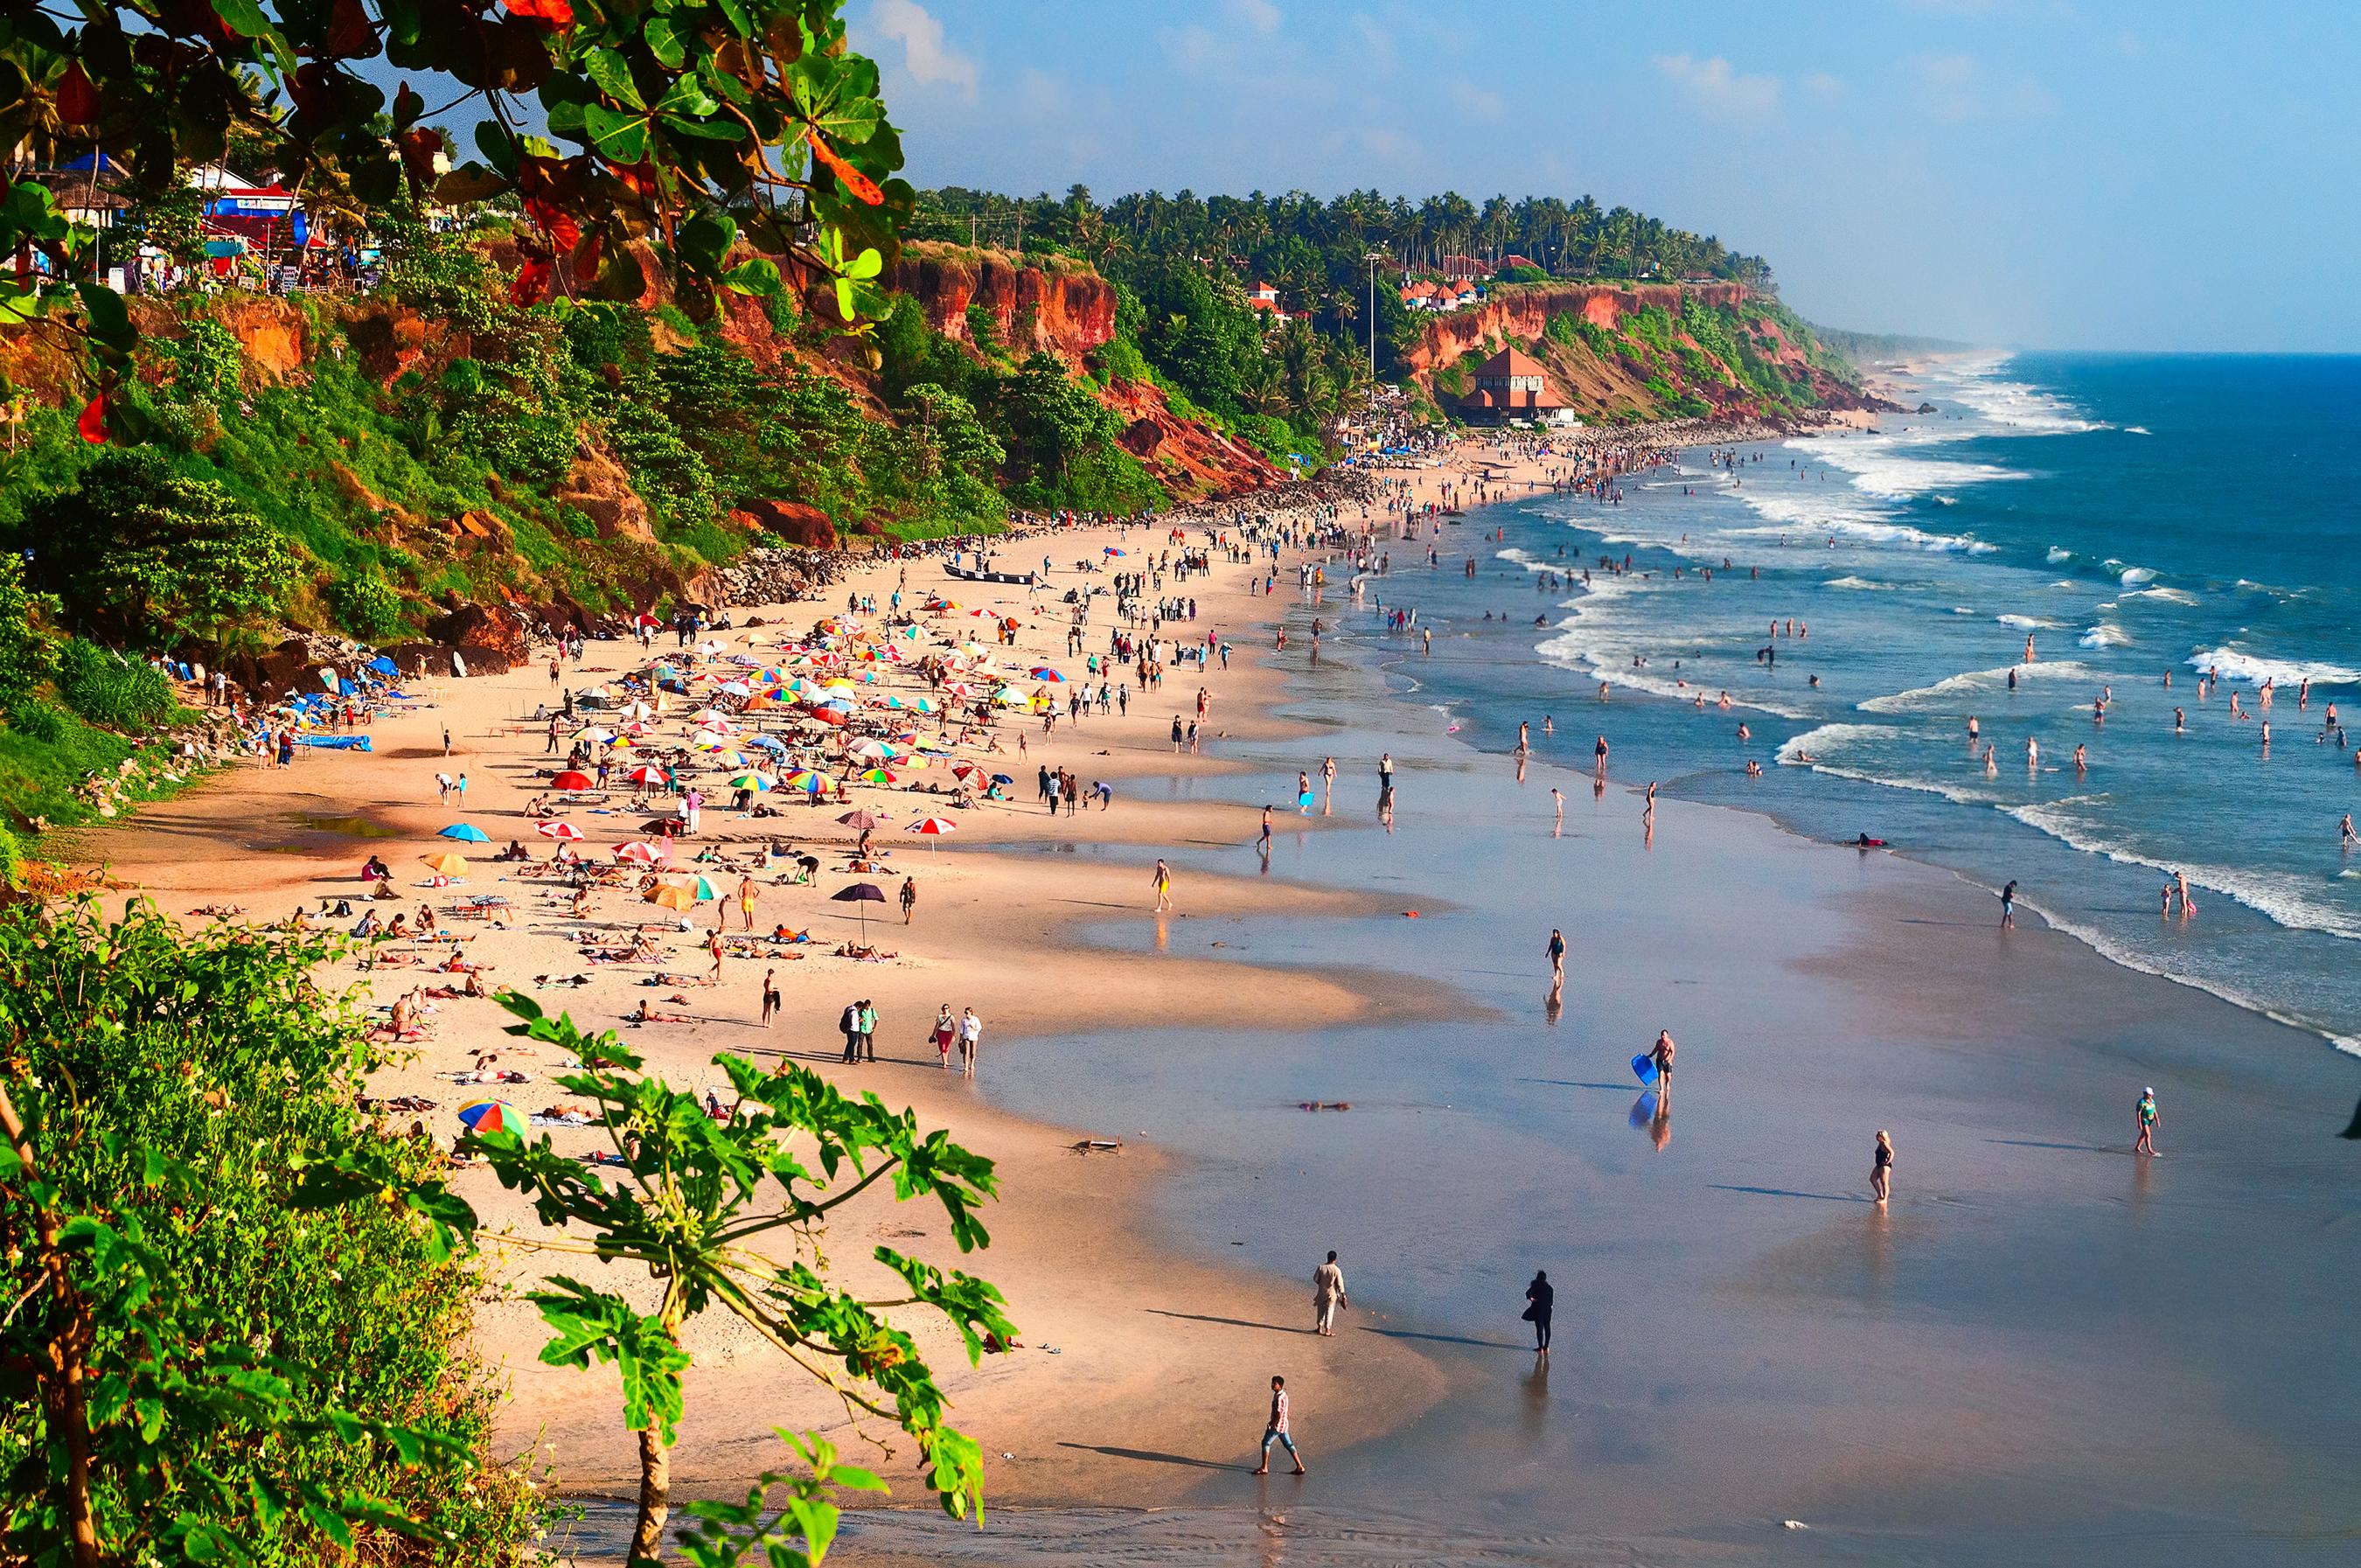 ocean tourism in india